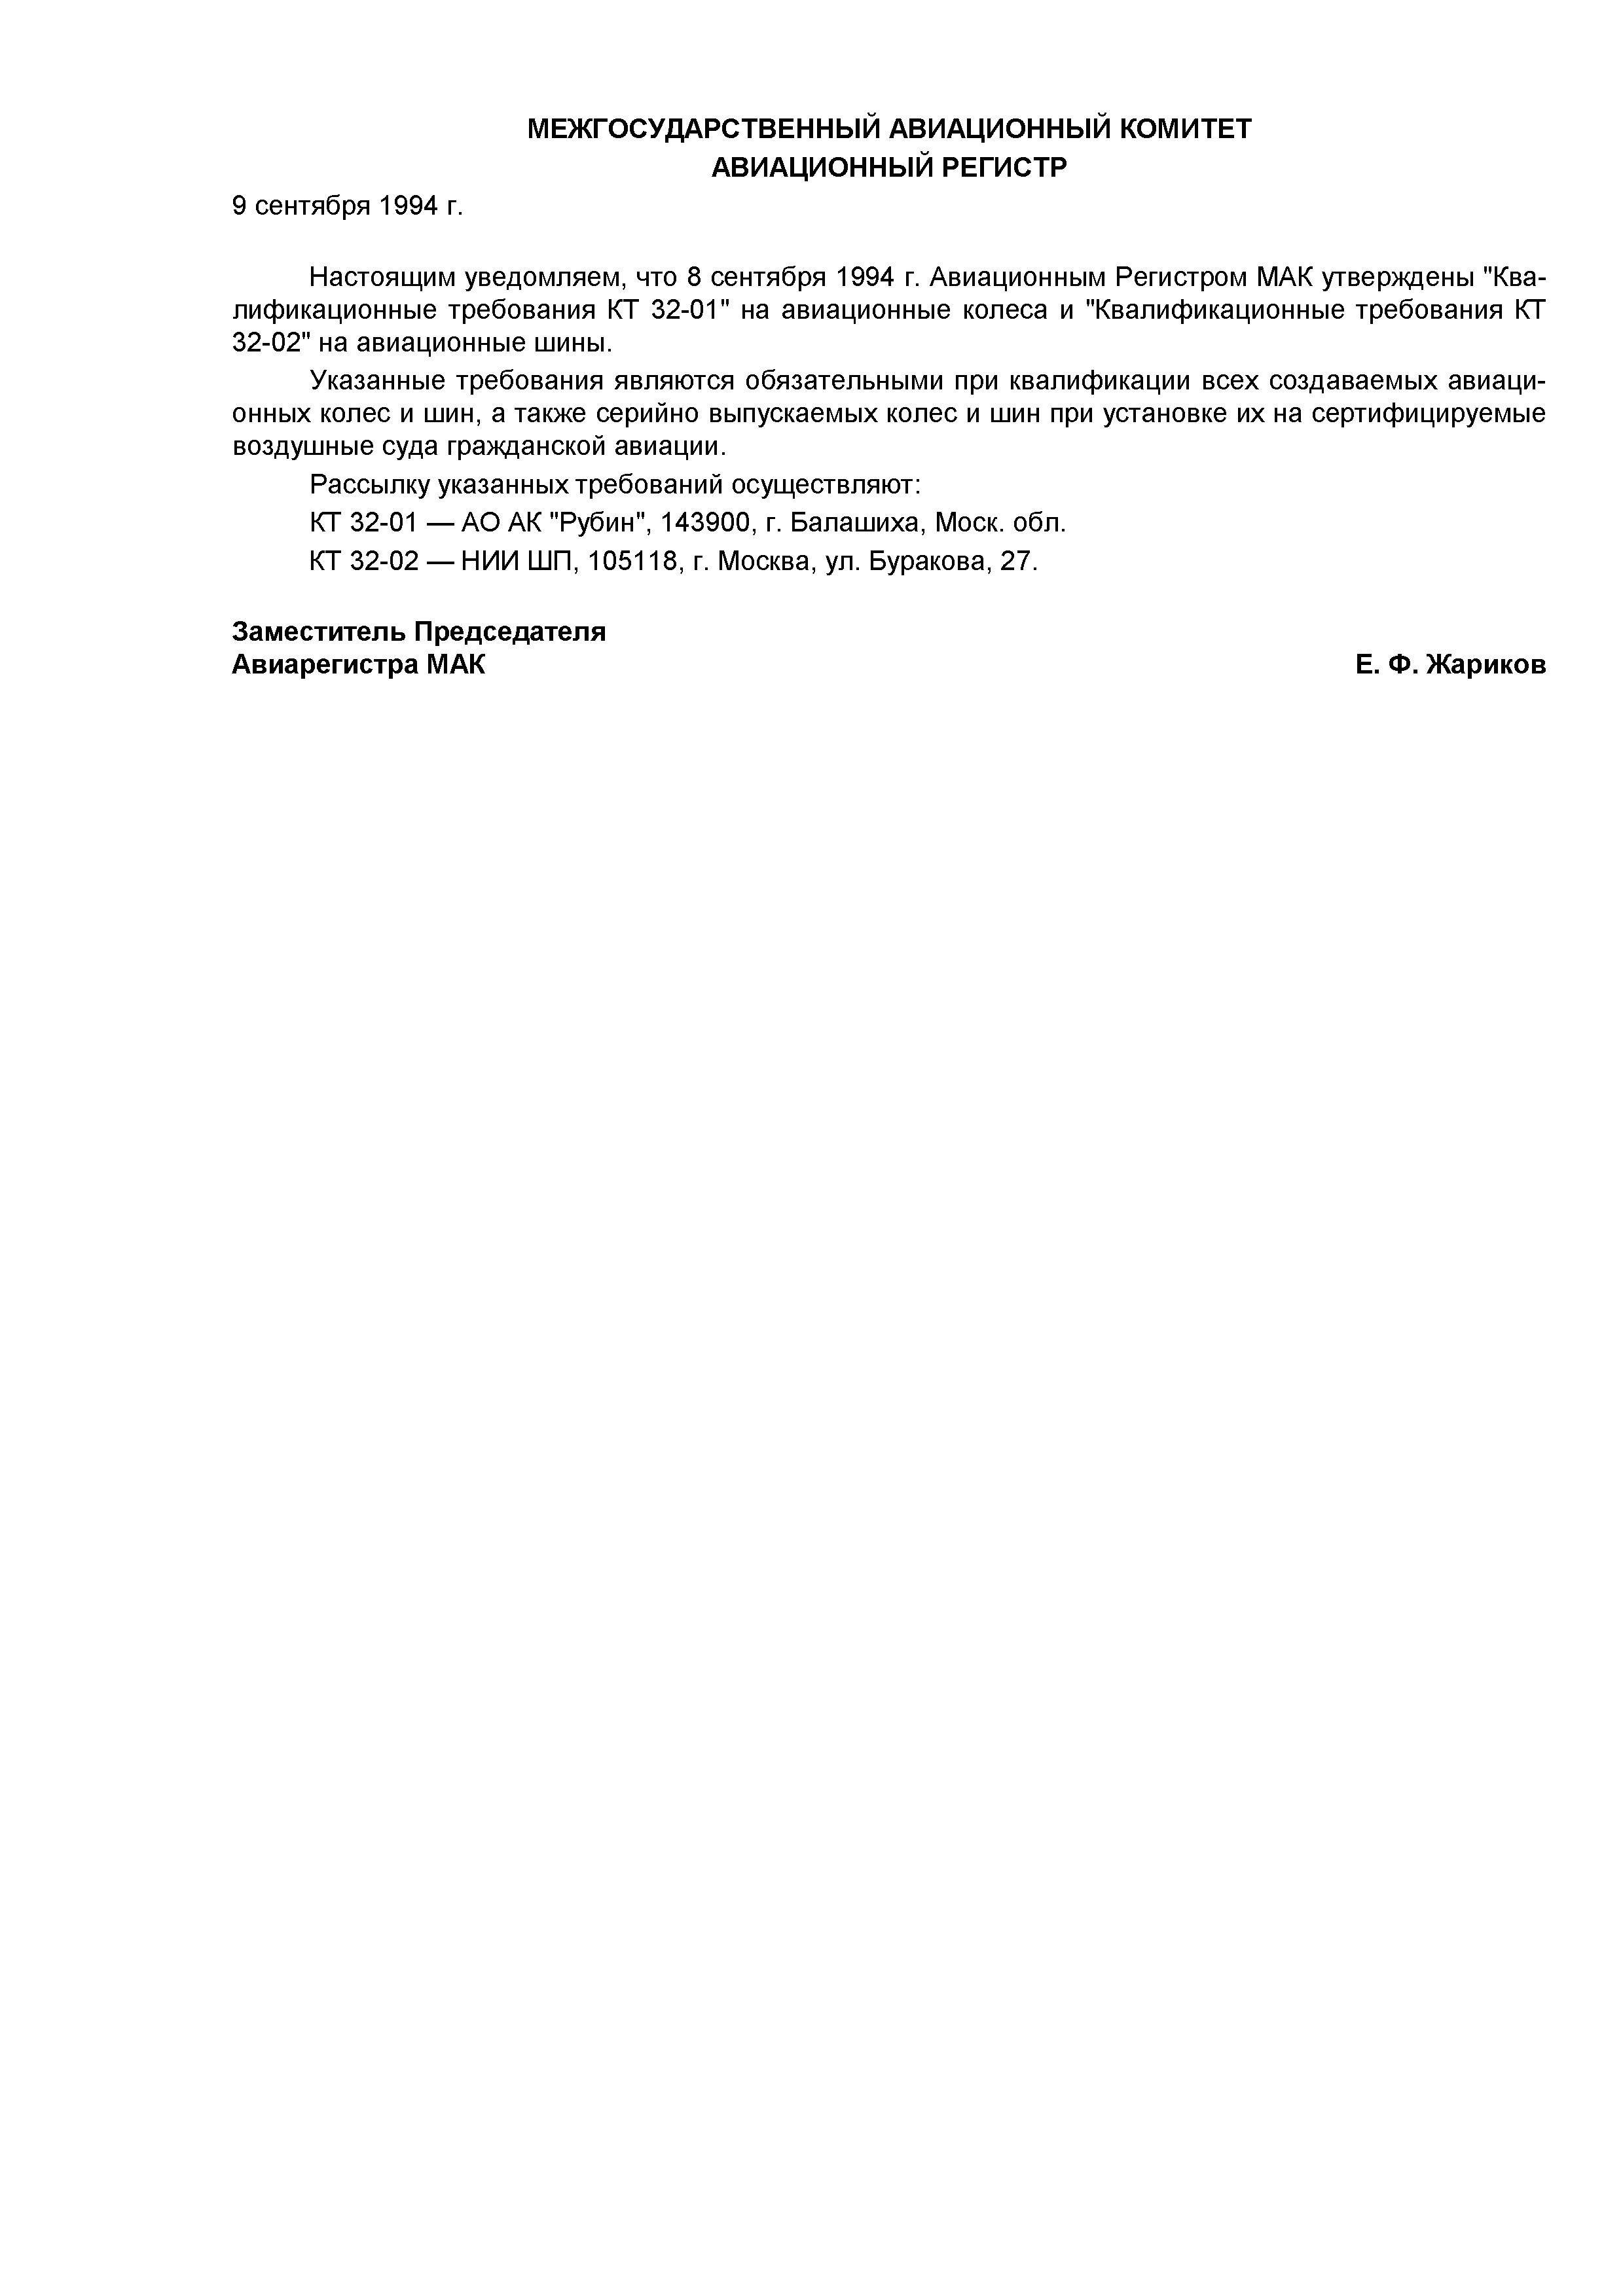 Директивное письмо 04-93